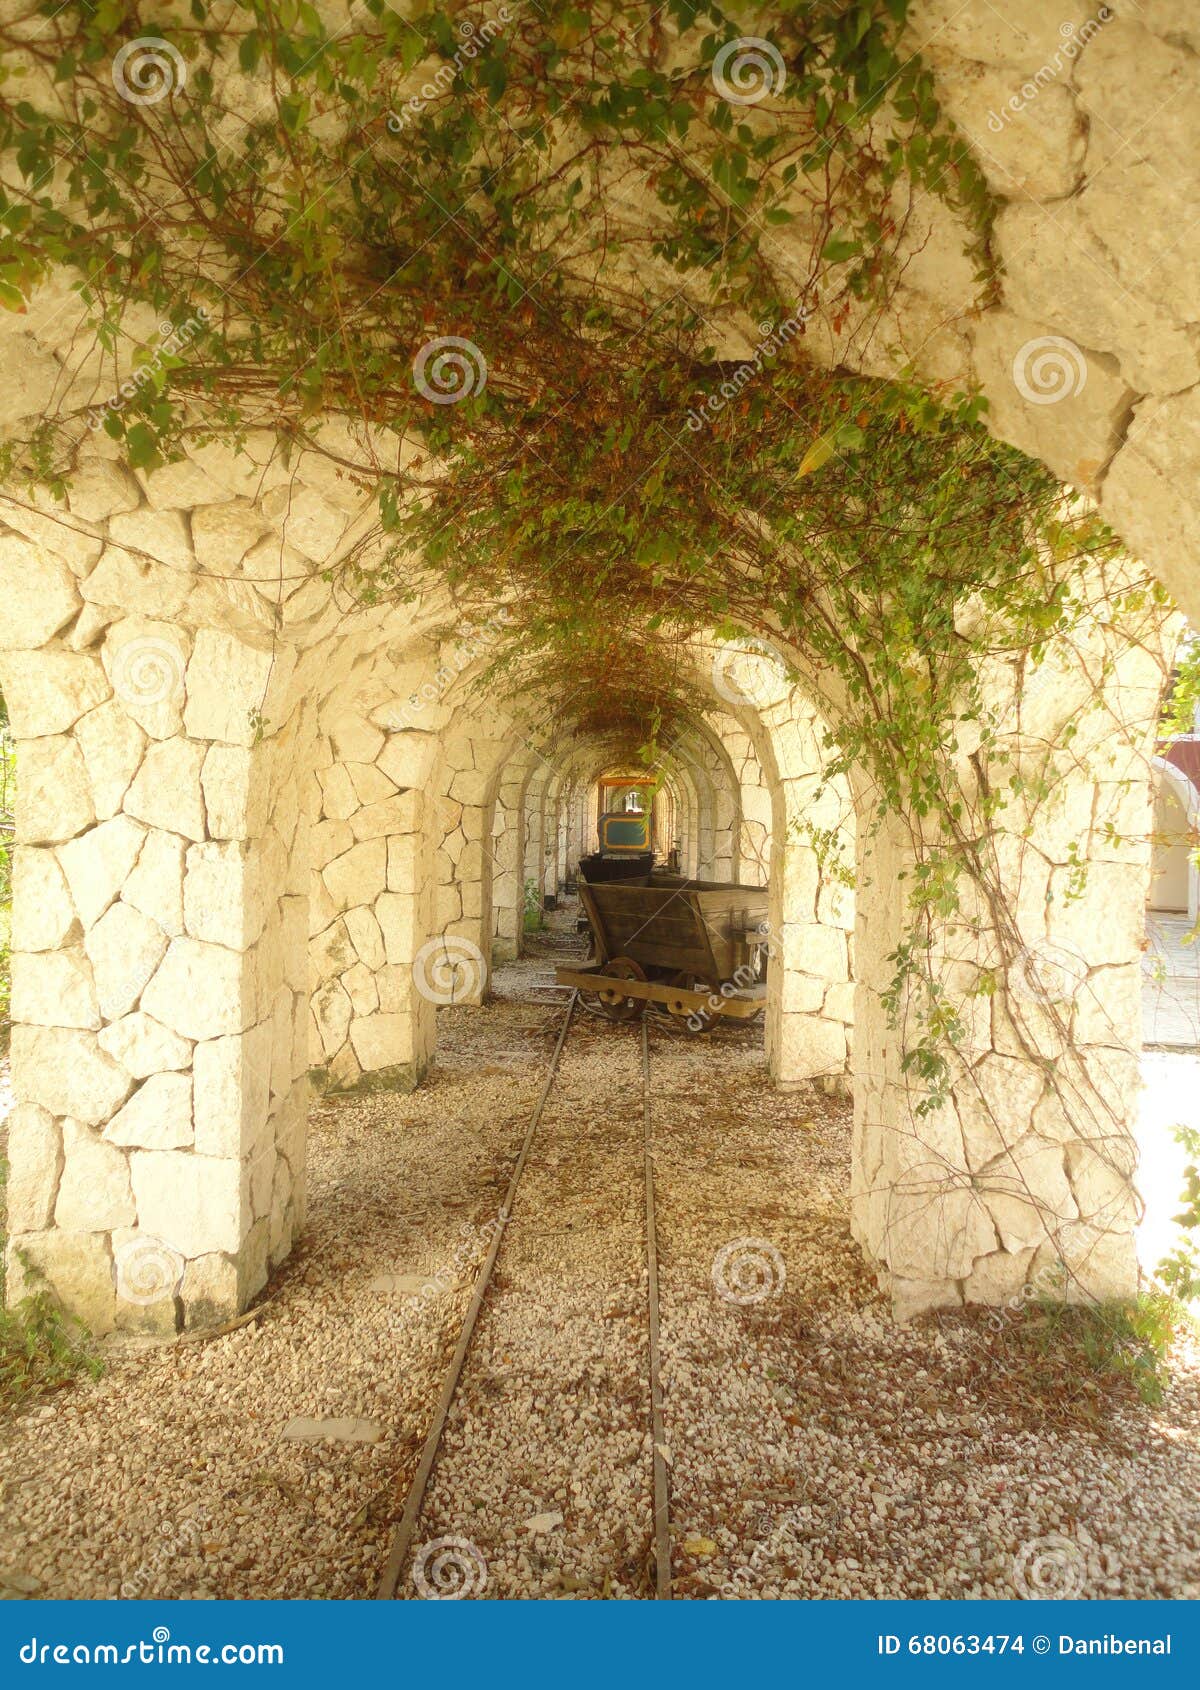 stone tunel